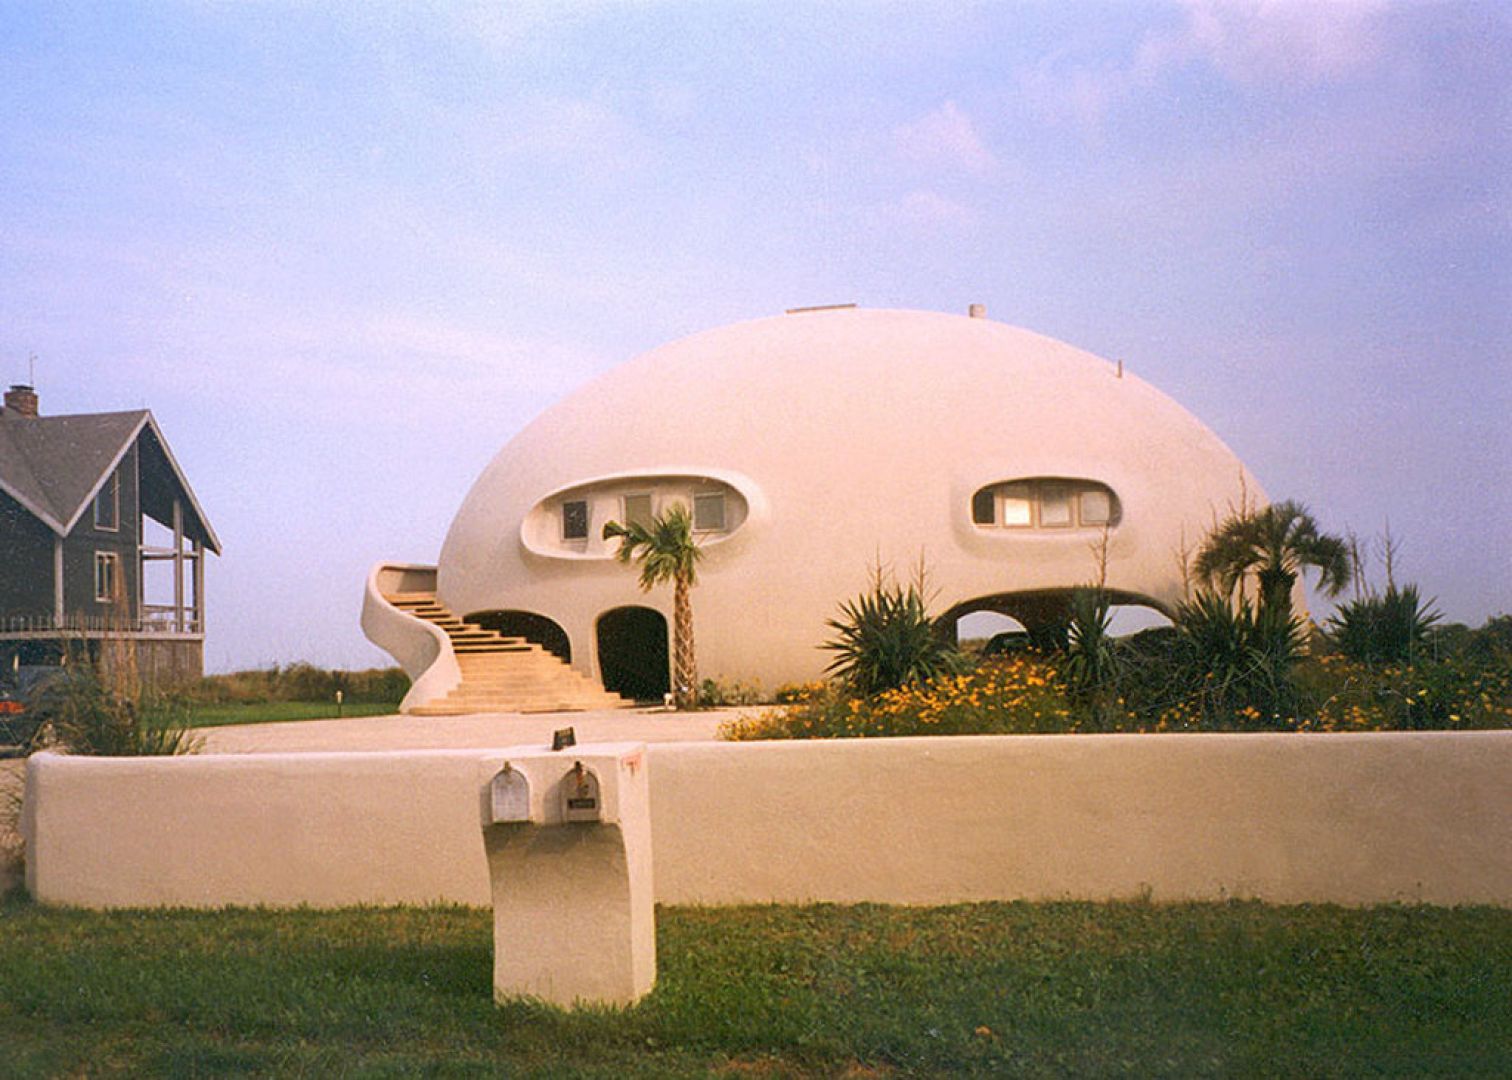 The Eye of the Storm to monolityczna konstrukcja na Wyspie Sullivana w Południowej Karolinie w Stanach Zjednoczonych, która z daleka przypomina wielkie leżące jajo z tajemniczymi otworami. Fot. monolithic.org